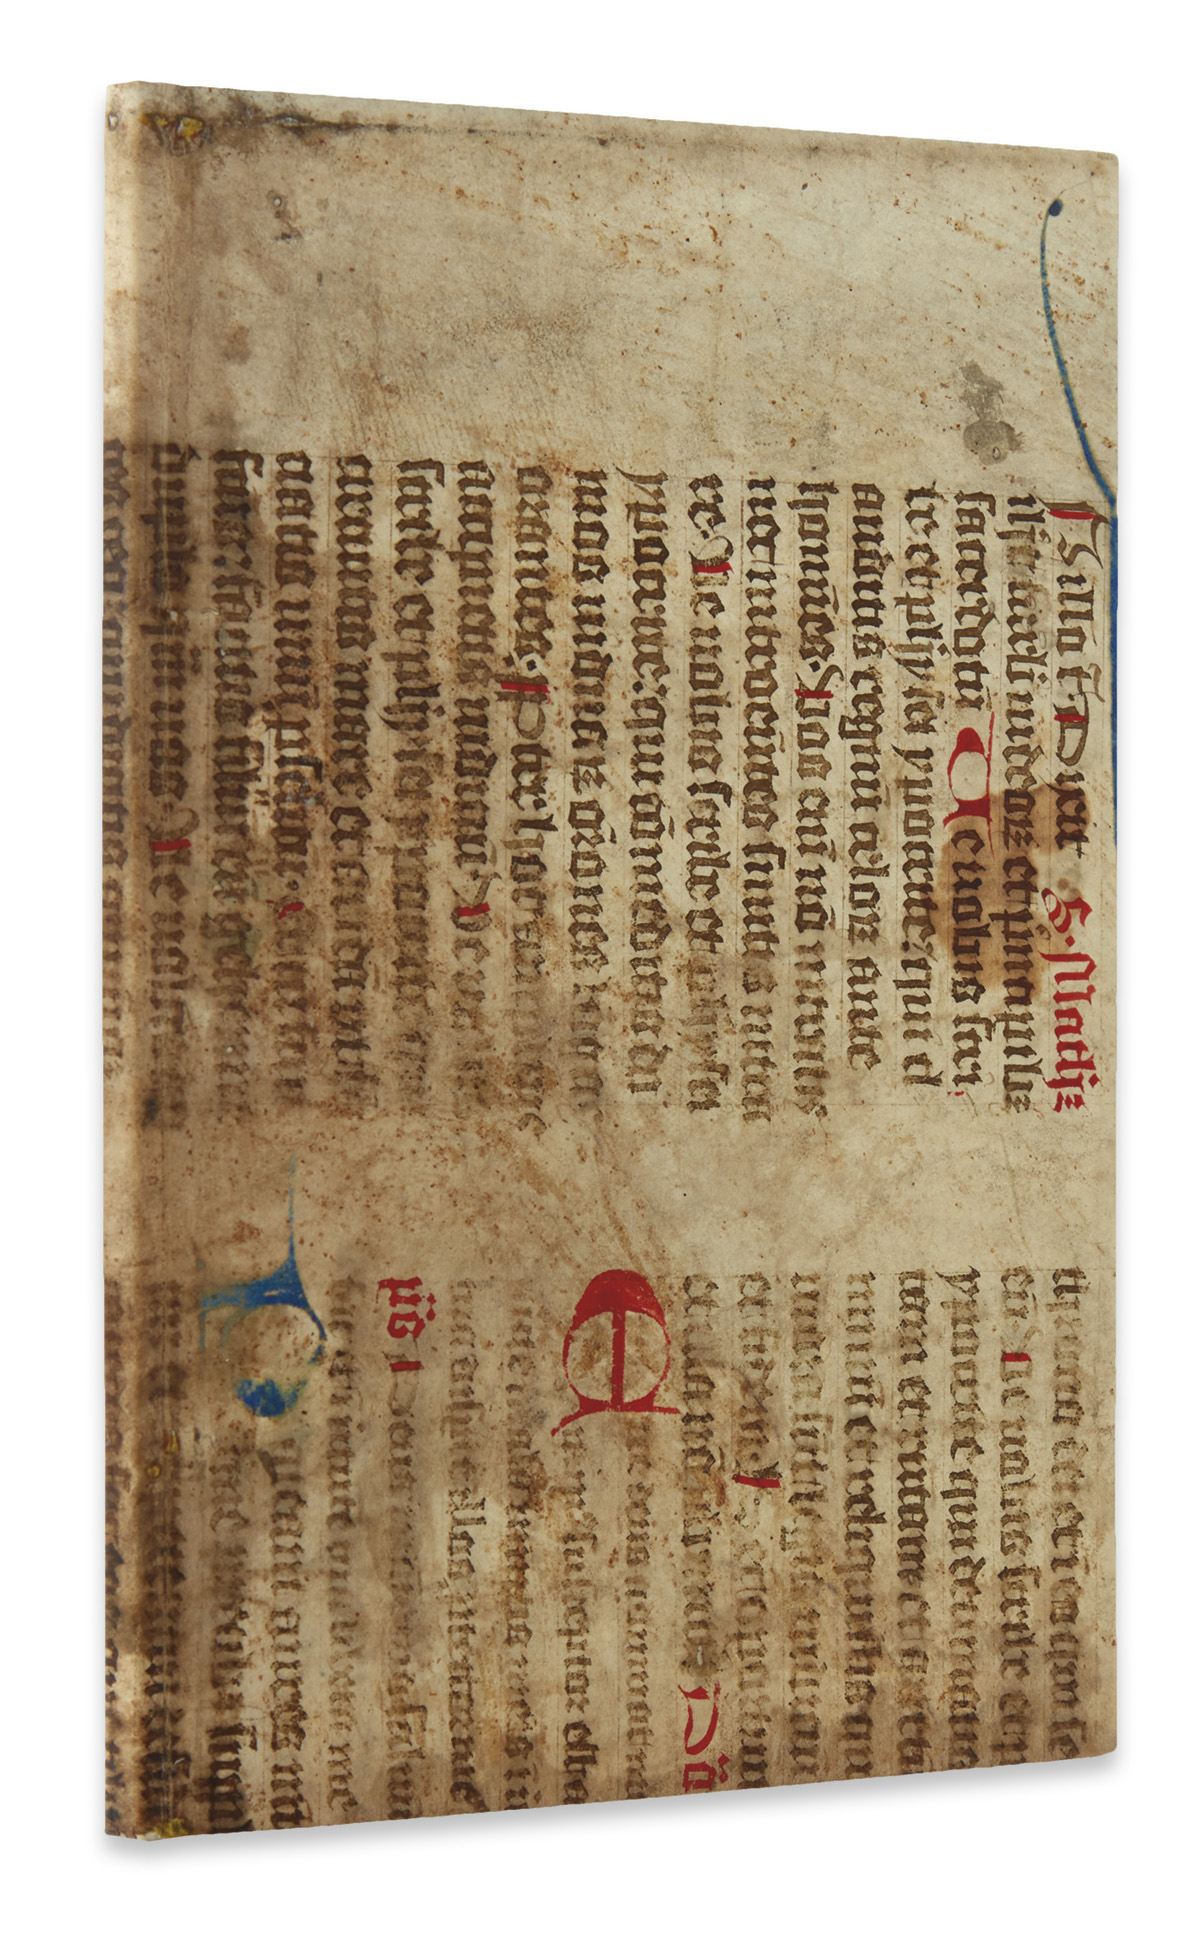 ALBERTUS MAGNUS, attributed to. Liber aggregationis, seu Liber secretorum de virtutibus herbarum, lapidum et animalium quorundam. 1506